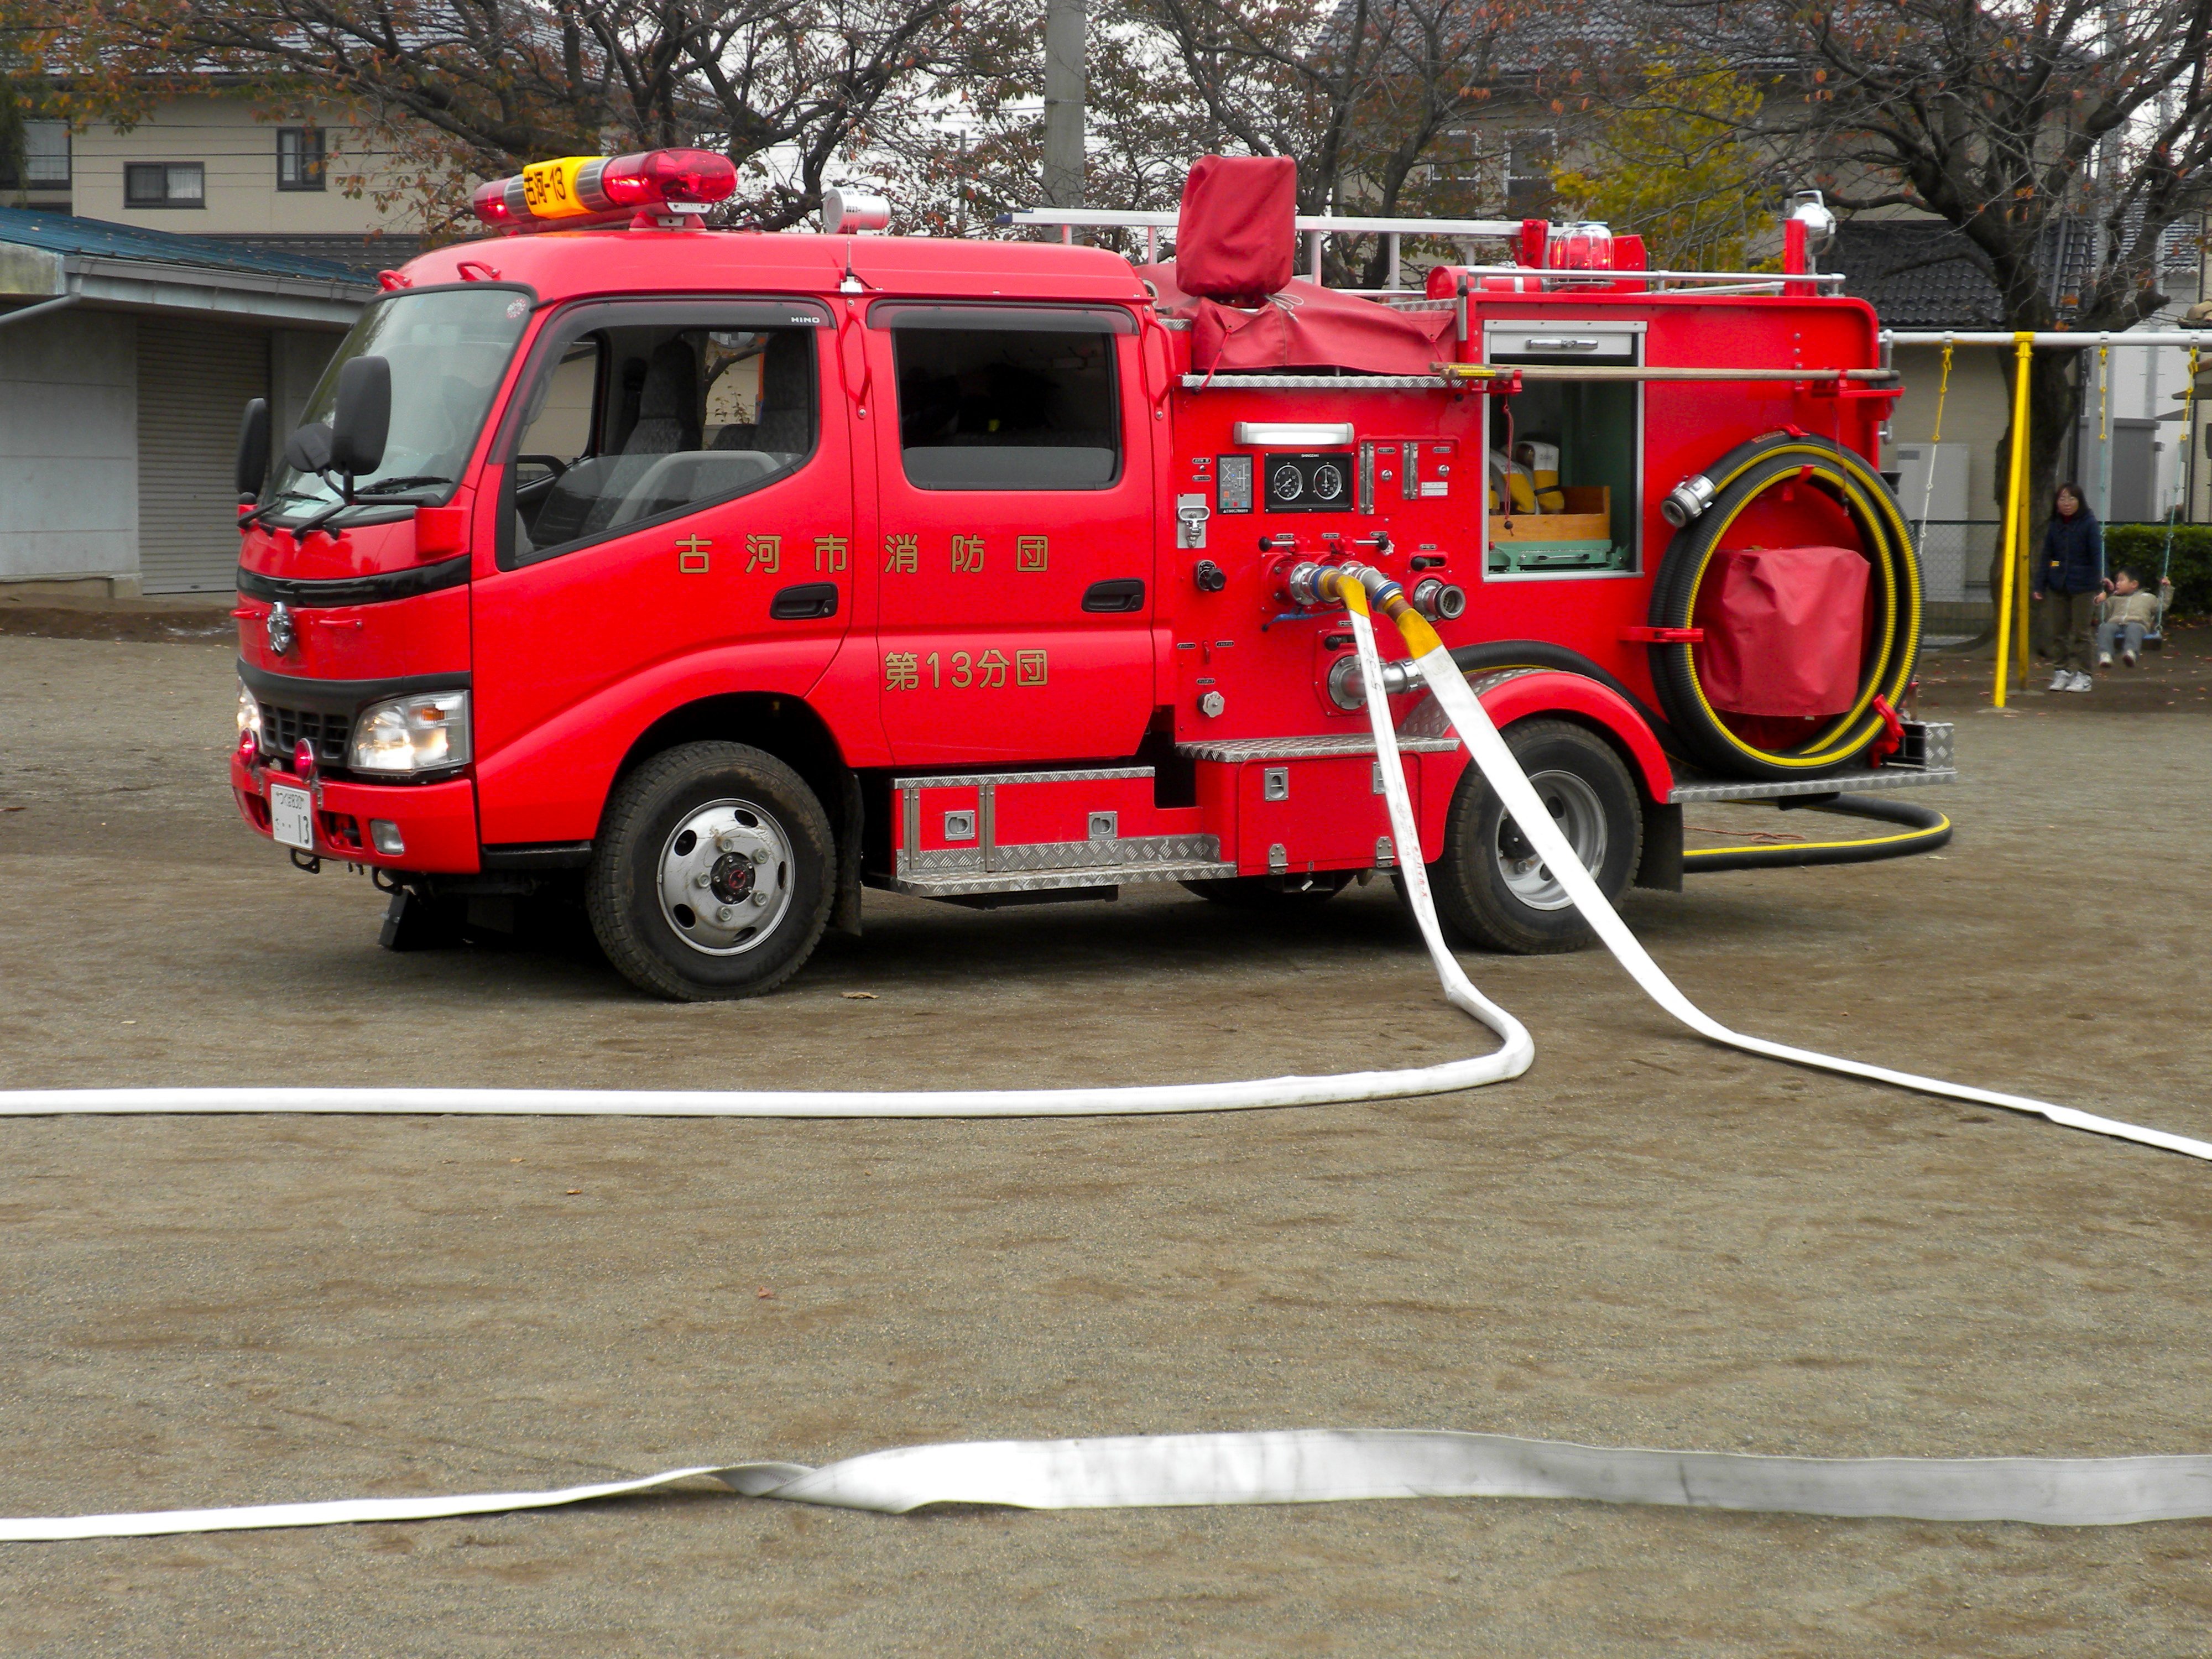 Автомобиль пожарный тема. Машина "Fire Truck" пожарная, 49450. Пожарная машинка (20 см) Fire-Fighting vehicle bp738. Пожарная машина FAW 12. FMC пожарная машина.